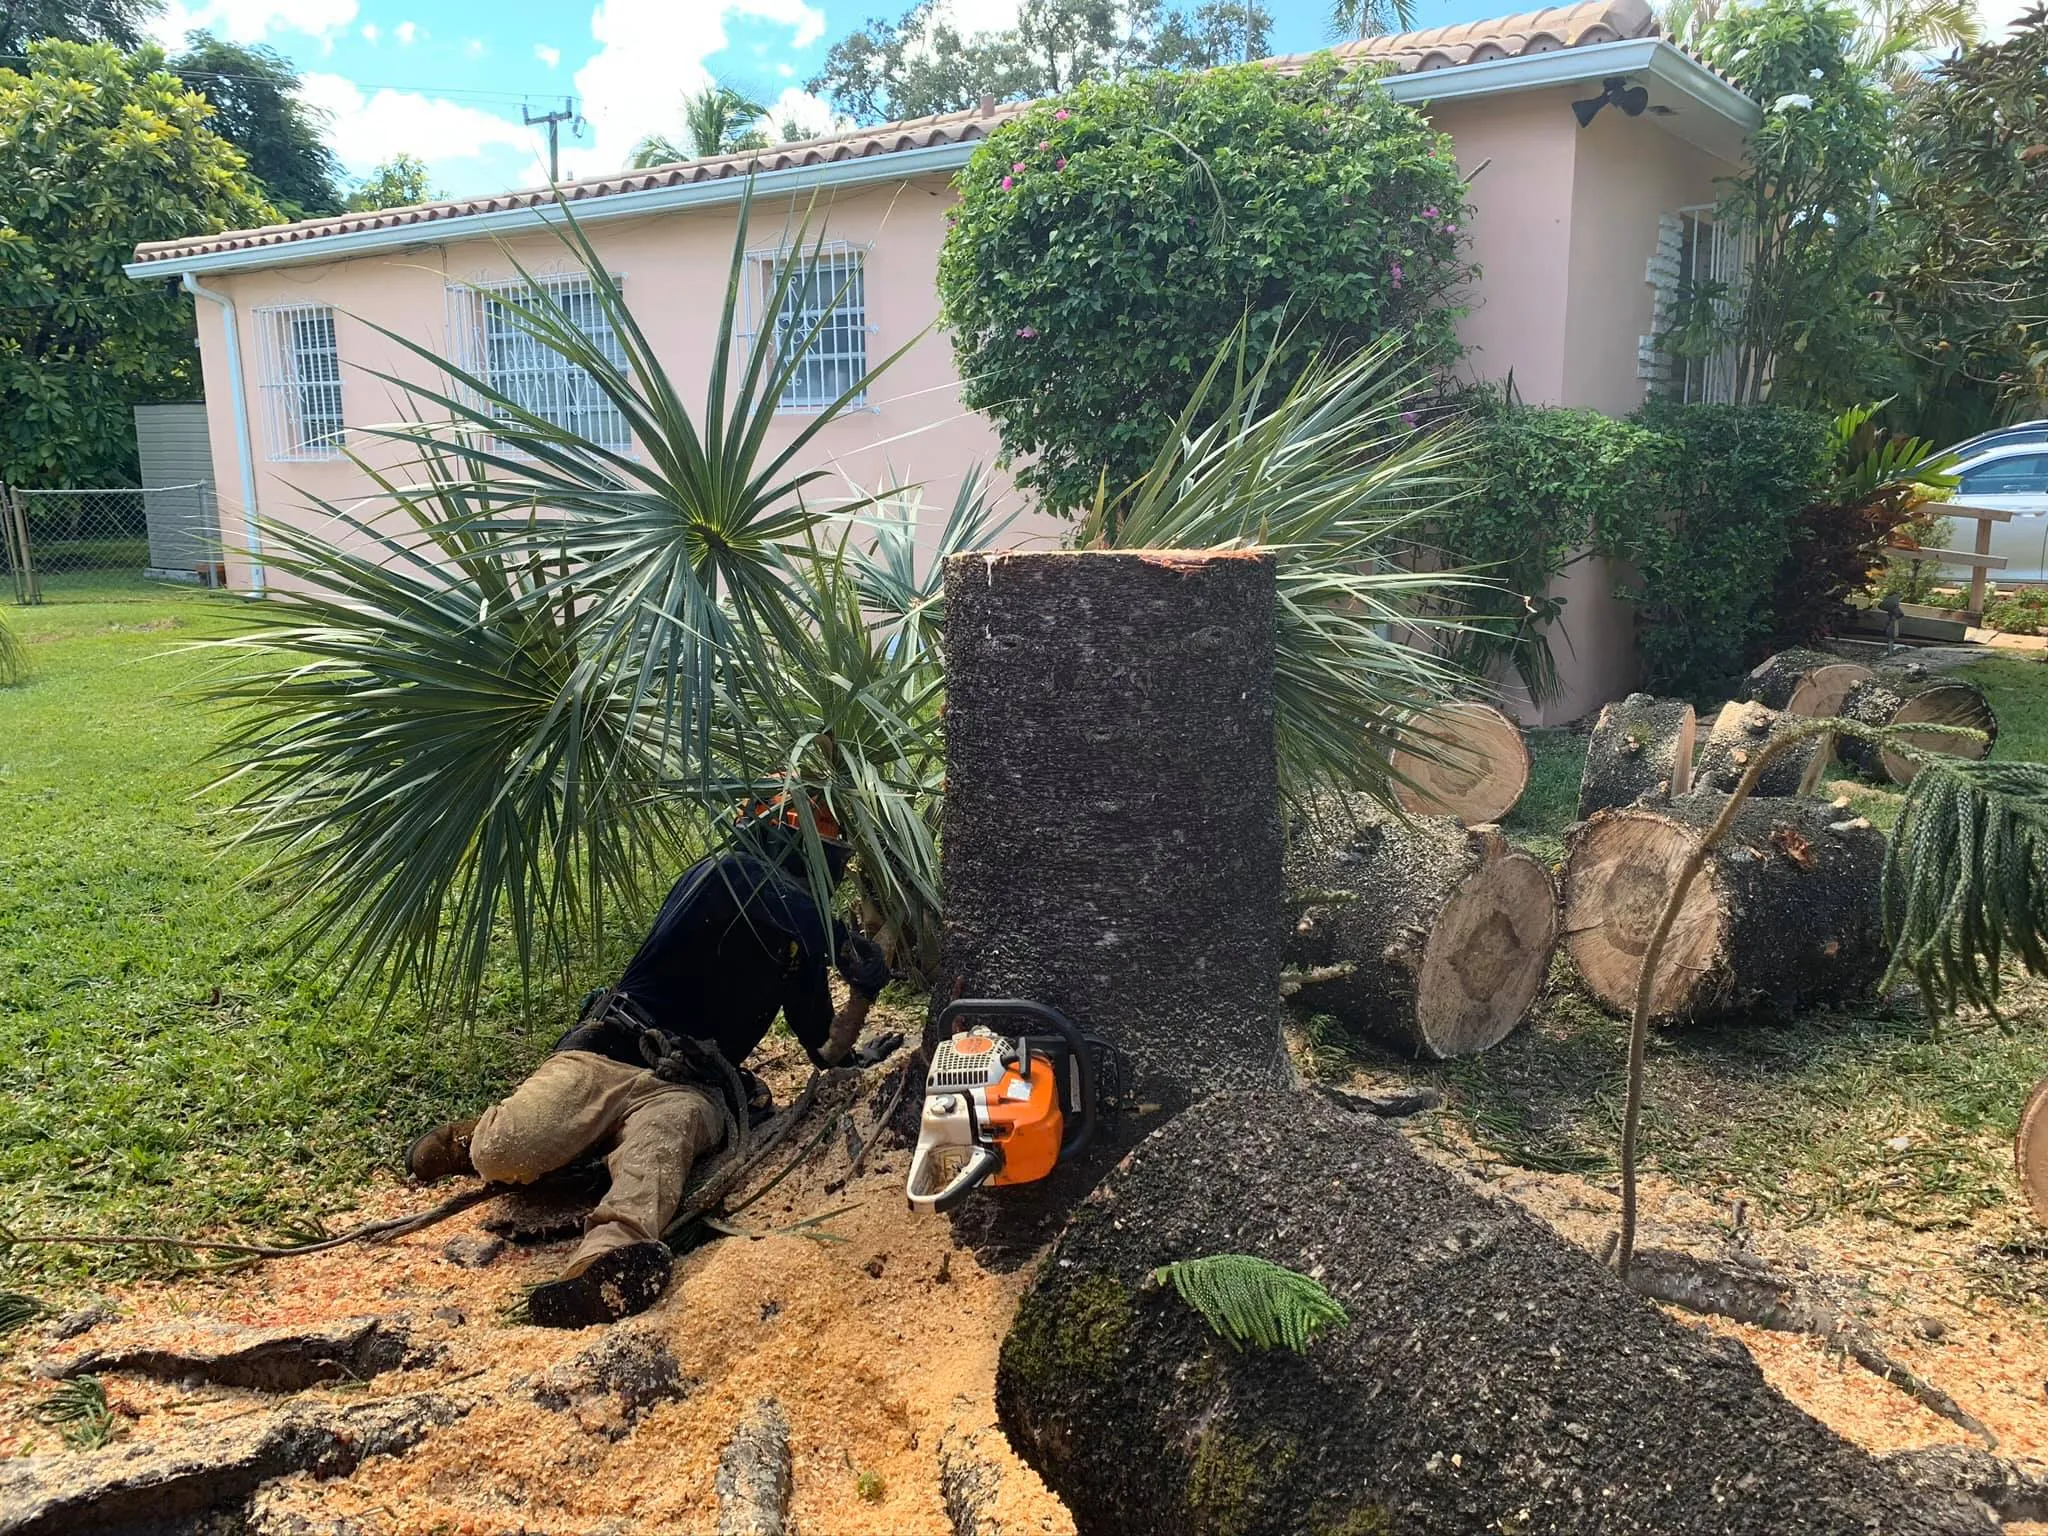 Tree Trimming for Sam's Tree Service in Miami Beach,  FL